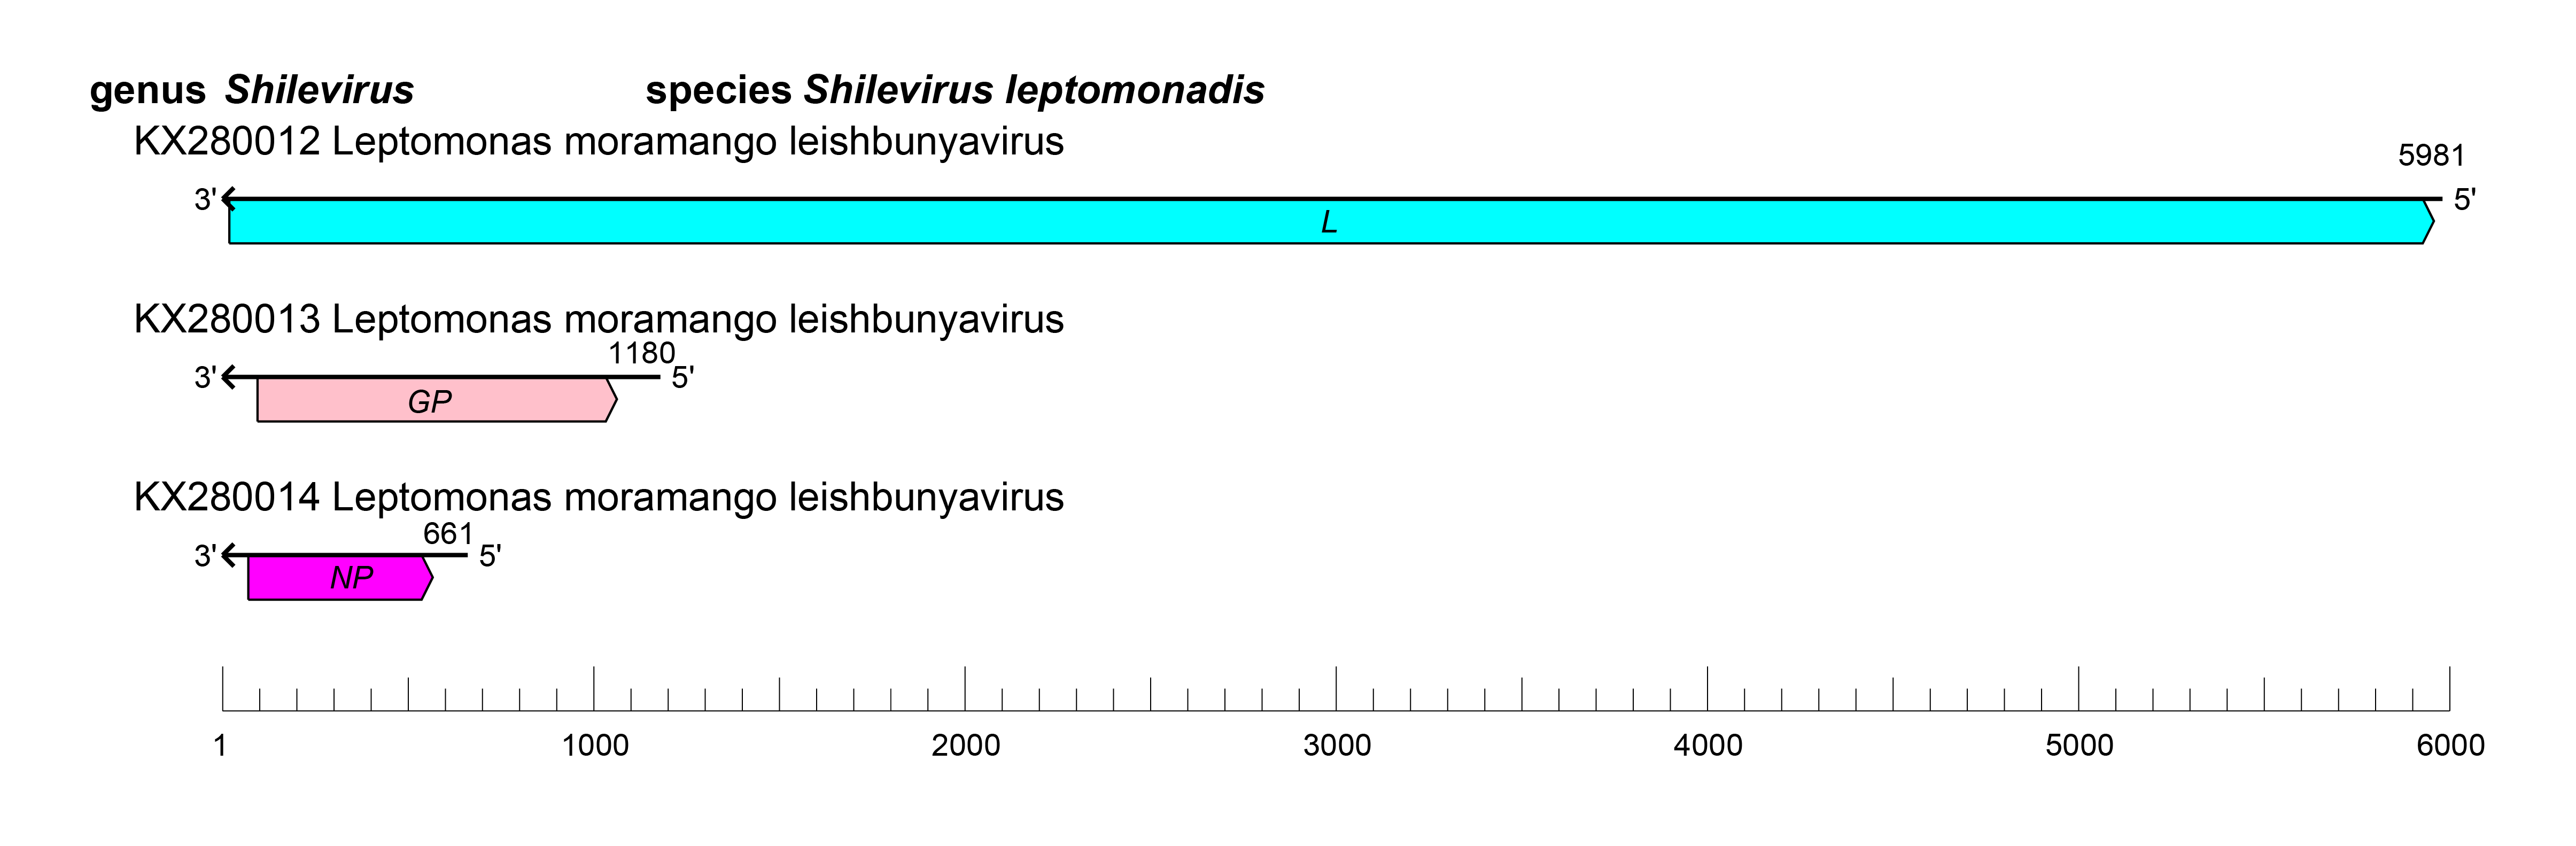 Leishbuviridae genome